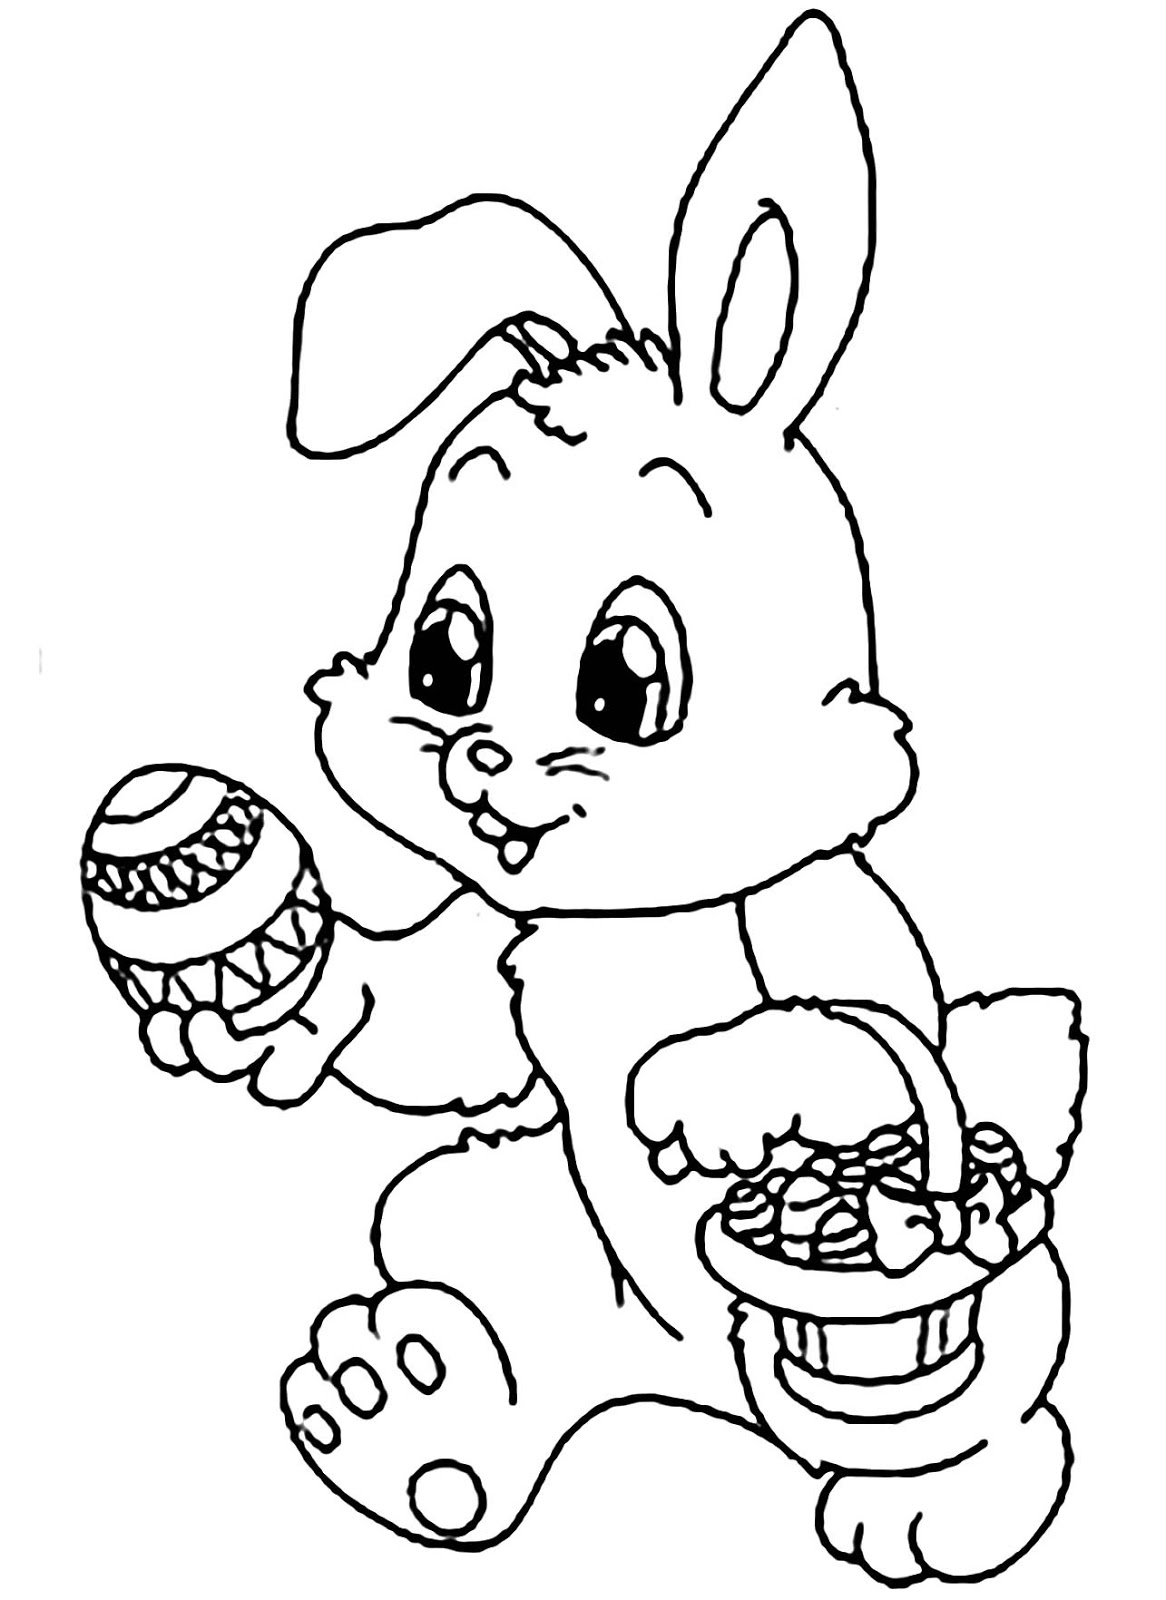 Tranh tô màu con thỏ và giỏ trứng